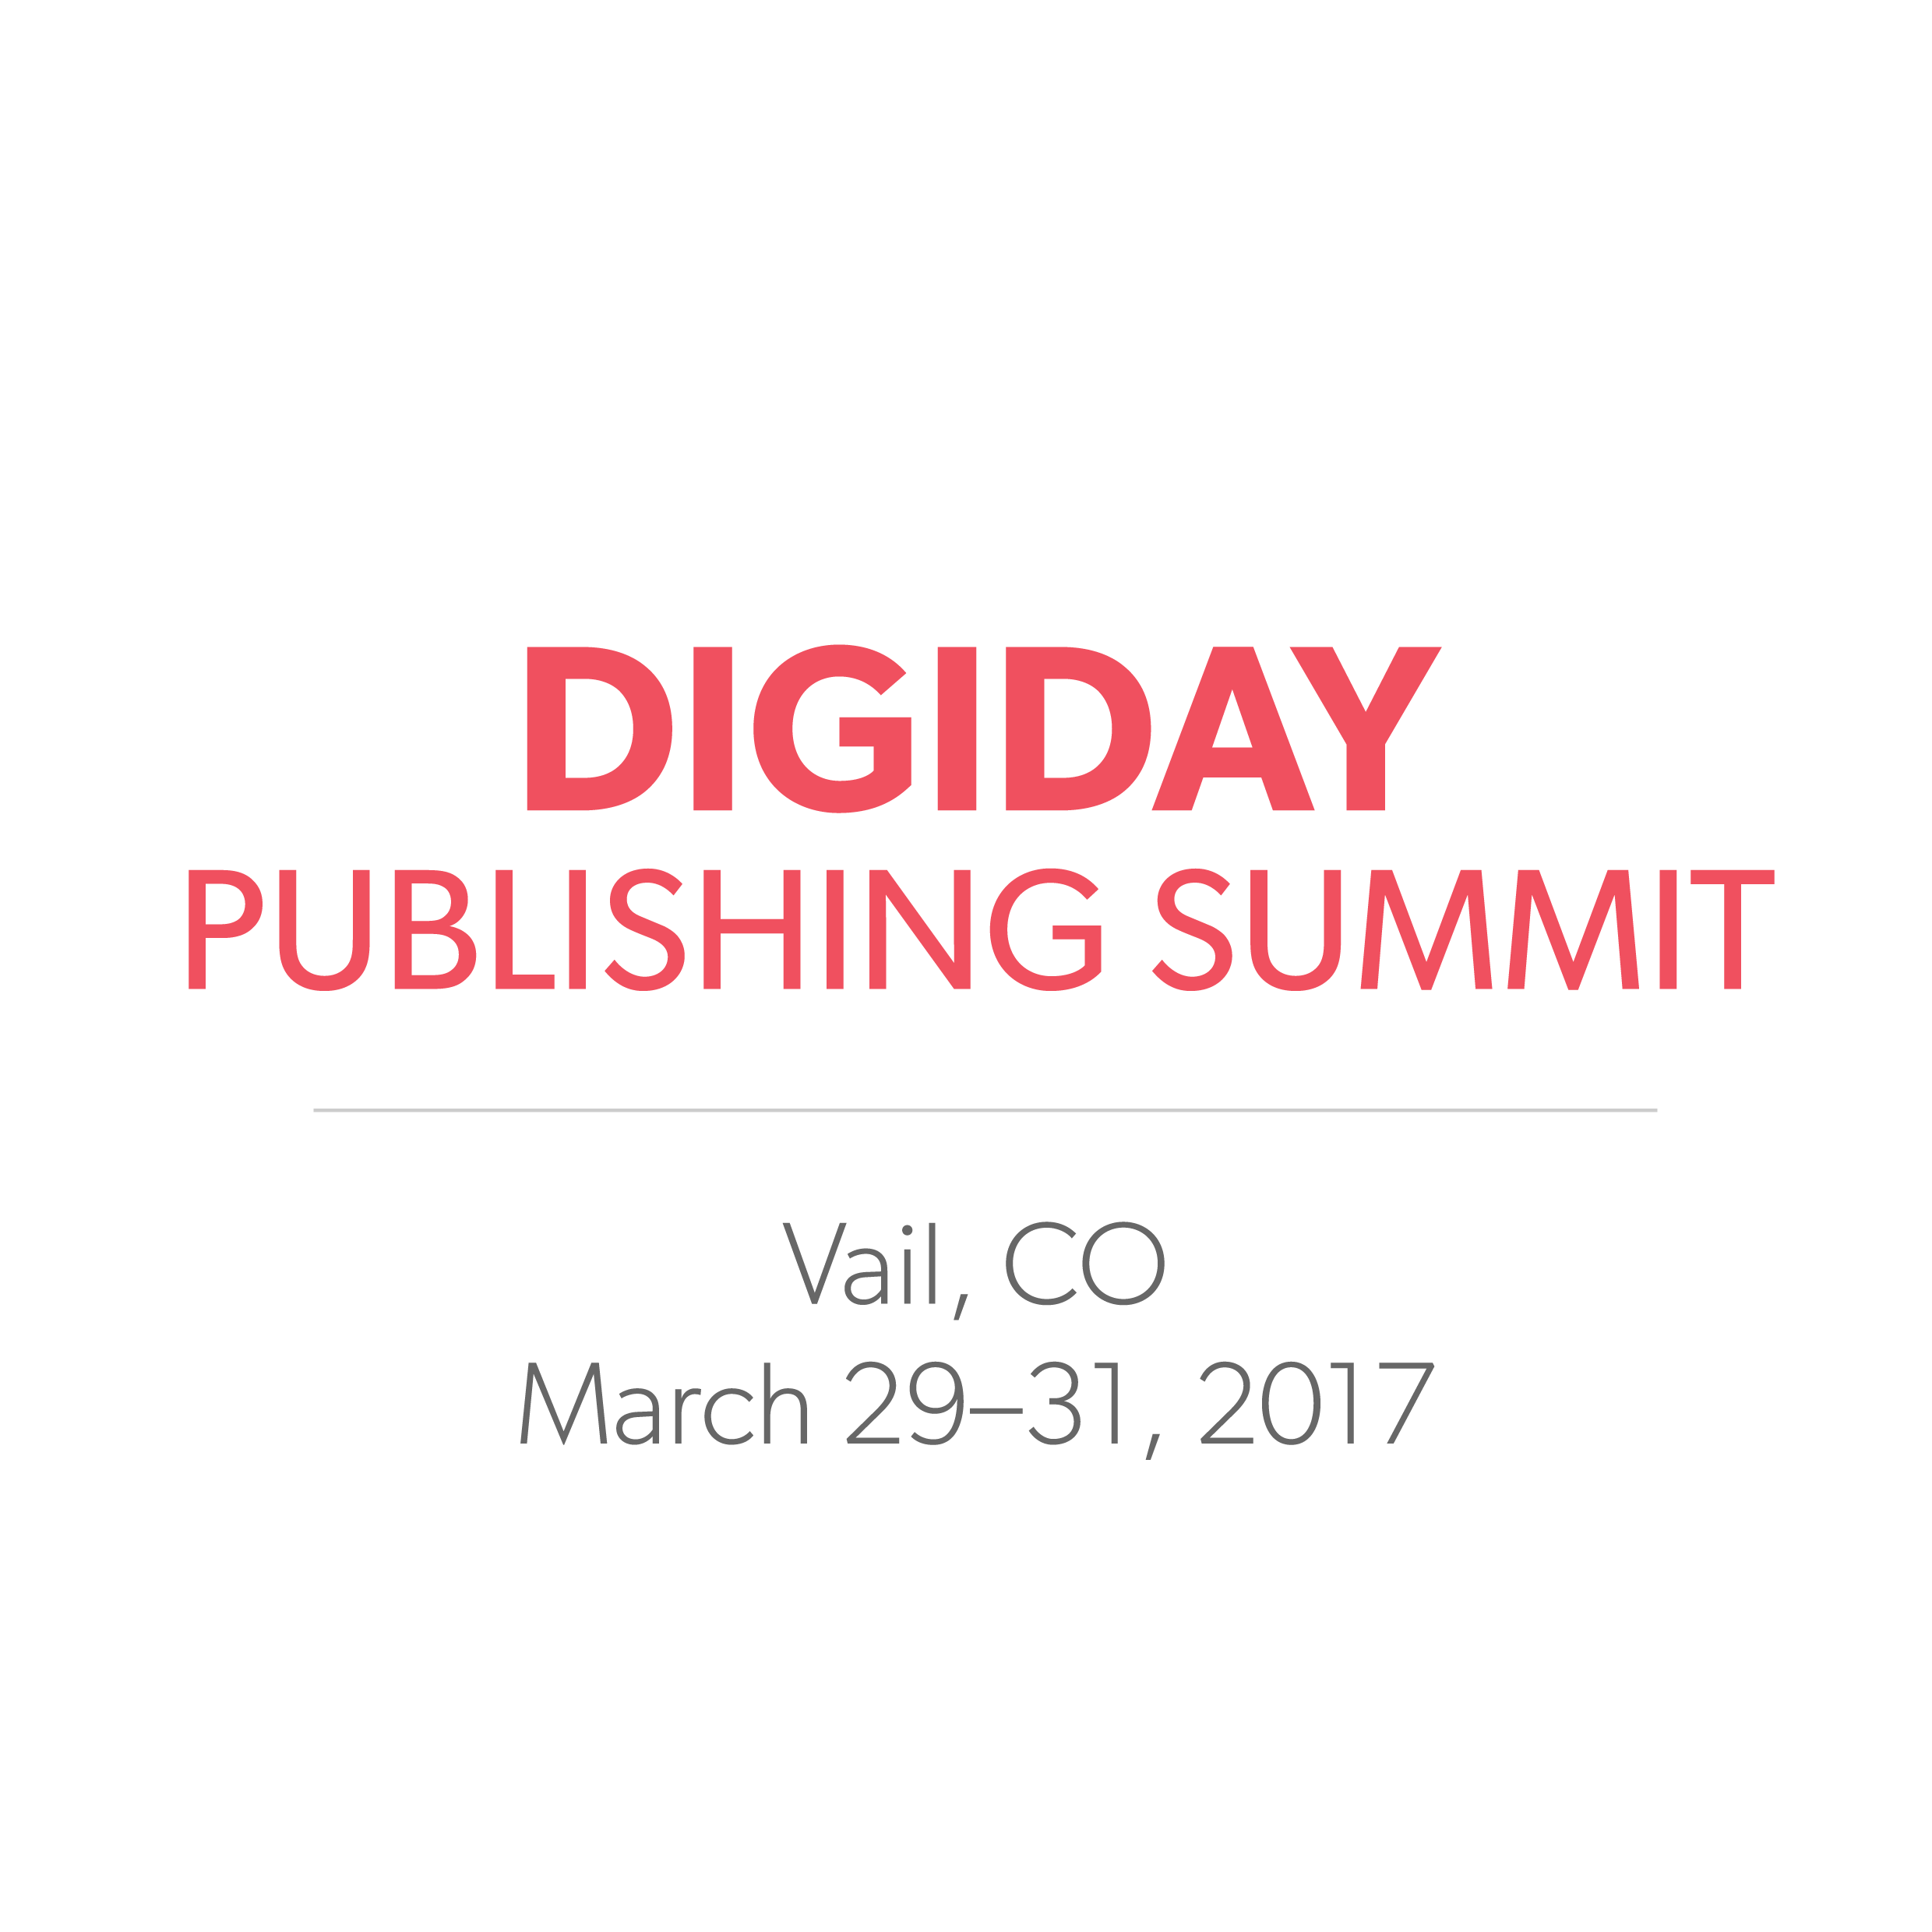 Digiday Publishing Summit 2017 - Digiday Publishing Summit